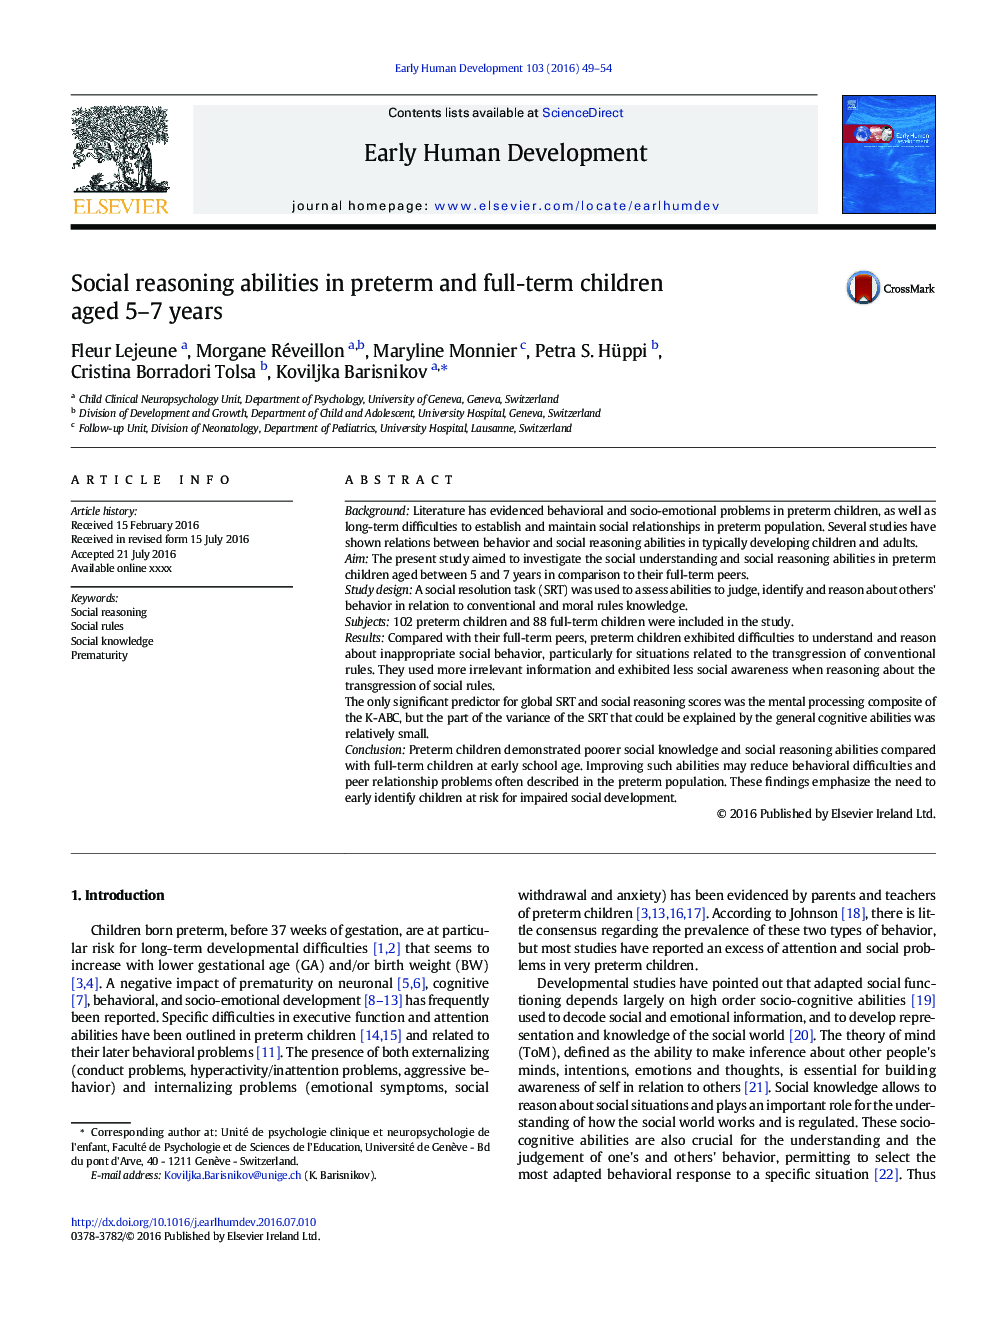 توانایی استدلال اجتماعی در کودکان نارس و کامل 5 تا 7 ساله